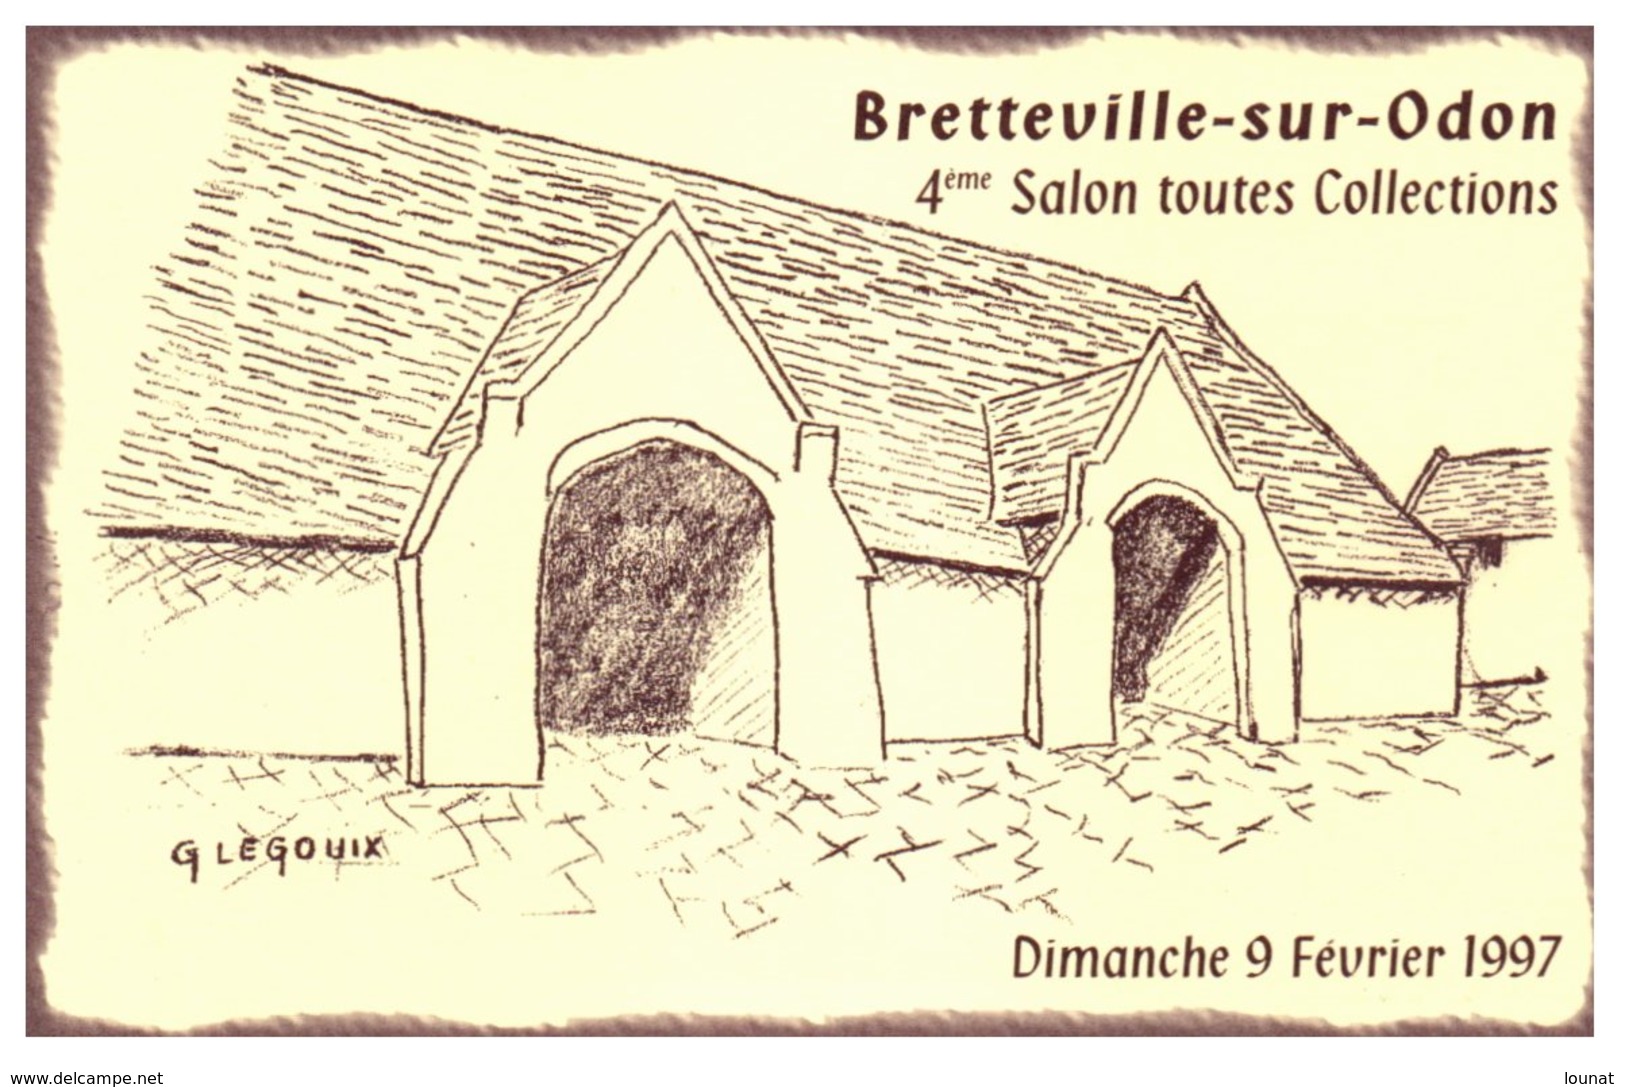 Bourses Et Salons - Bretteville Sur Odon - Salon Toutes Collections Année 1997 - Ferme De La Baronnie - Sammlerbörsen & Sammlerausstellungen